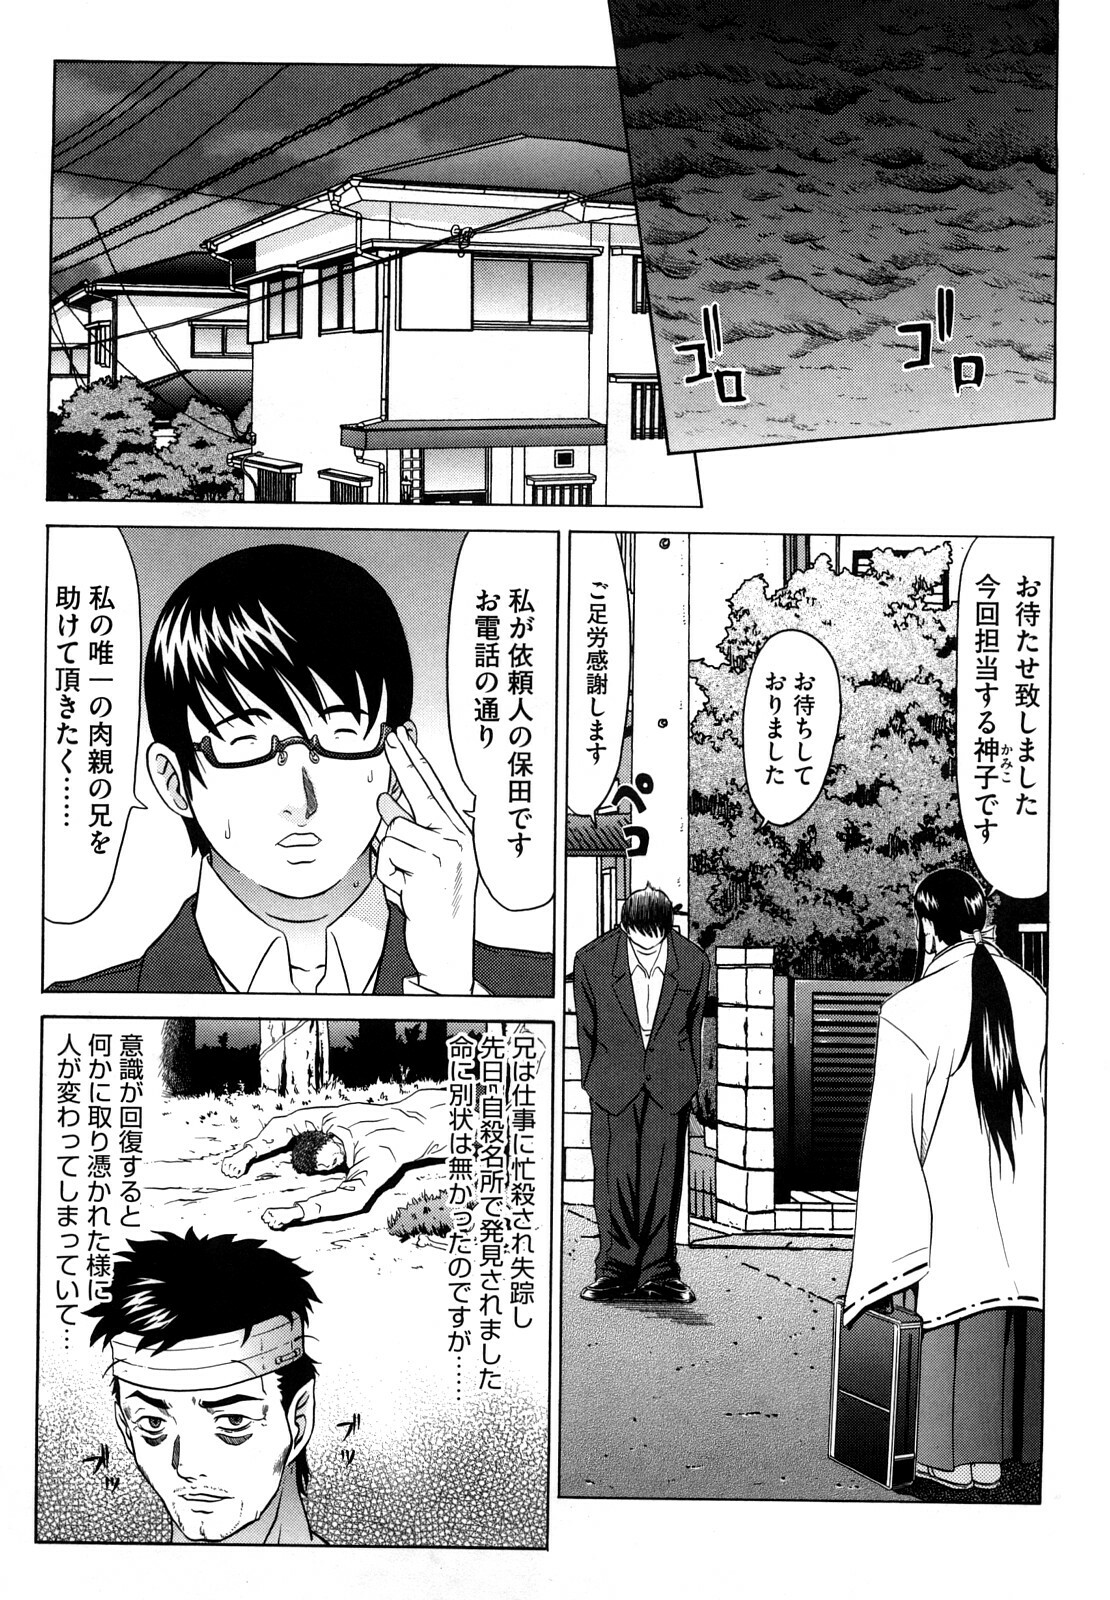 [Kurono Masakado] Nocturnal page 6 full